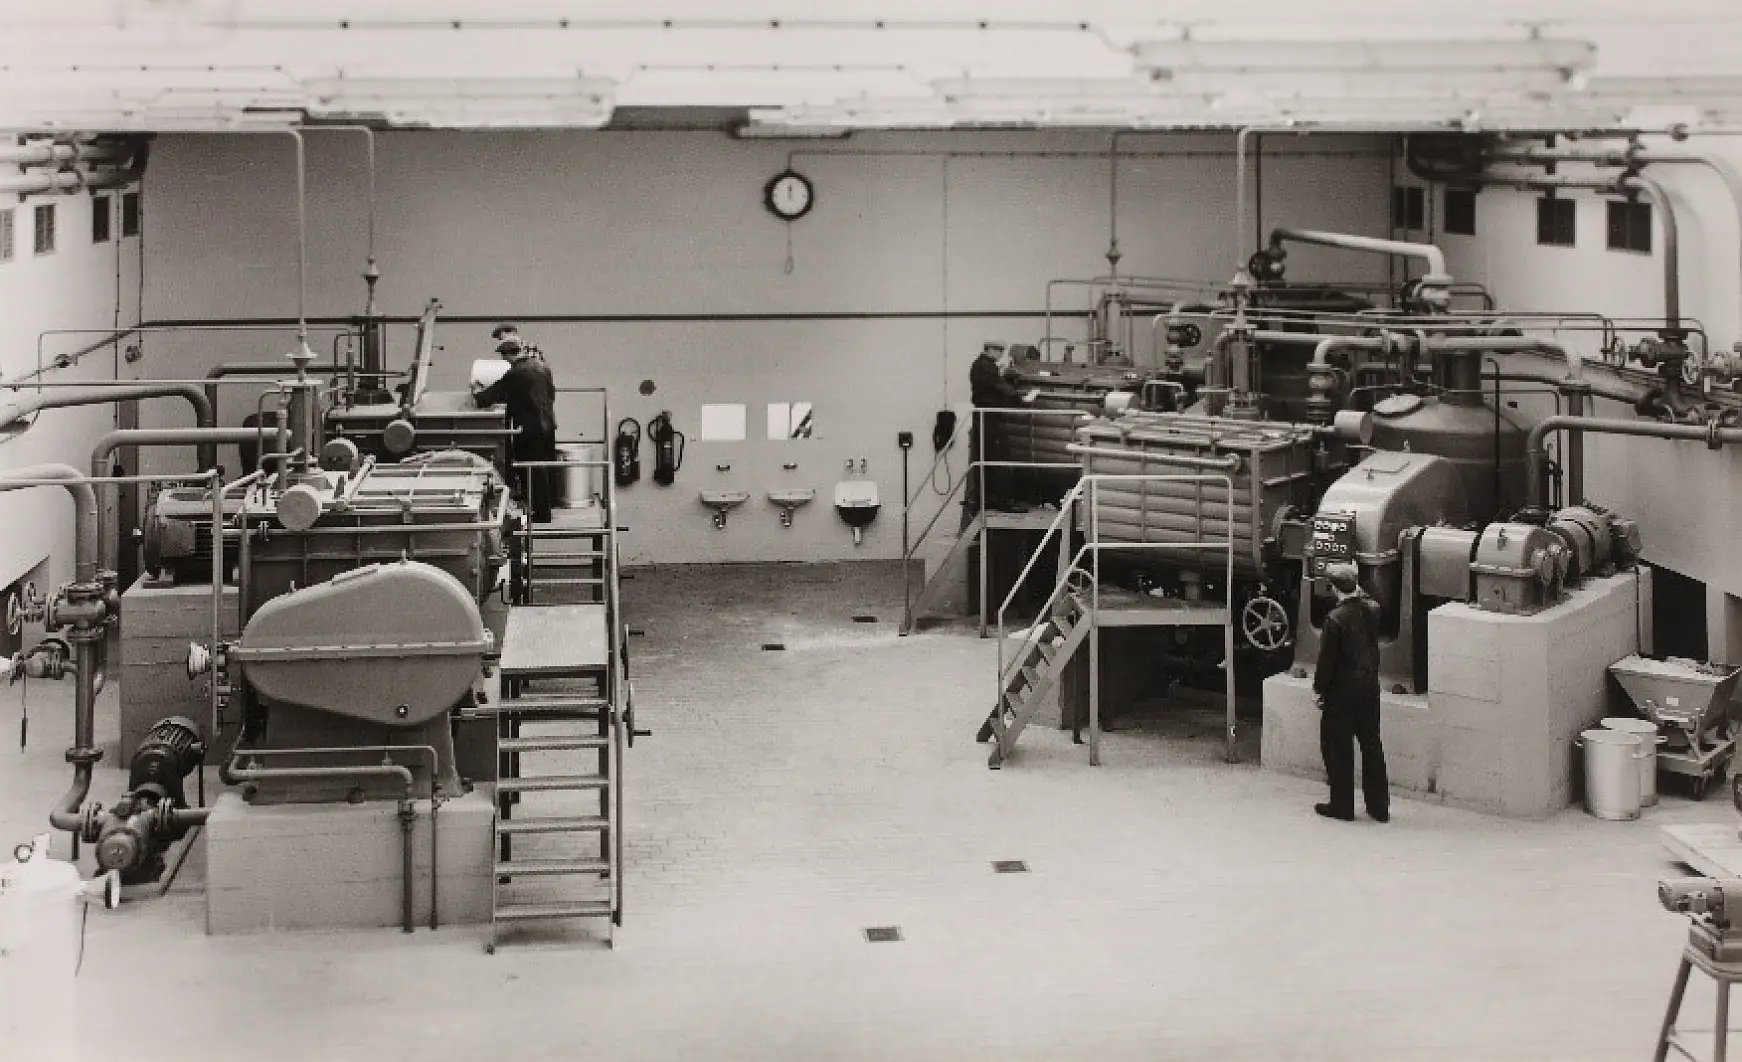 Die Aufbereitung von Klebmassen mithilfe von Kautschuk, Harzen und anderen Rohstoffen fand 1961 im Knetraum statt.